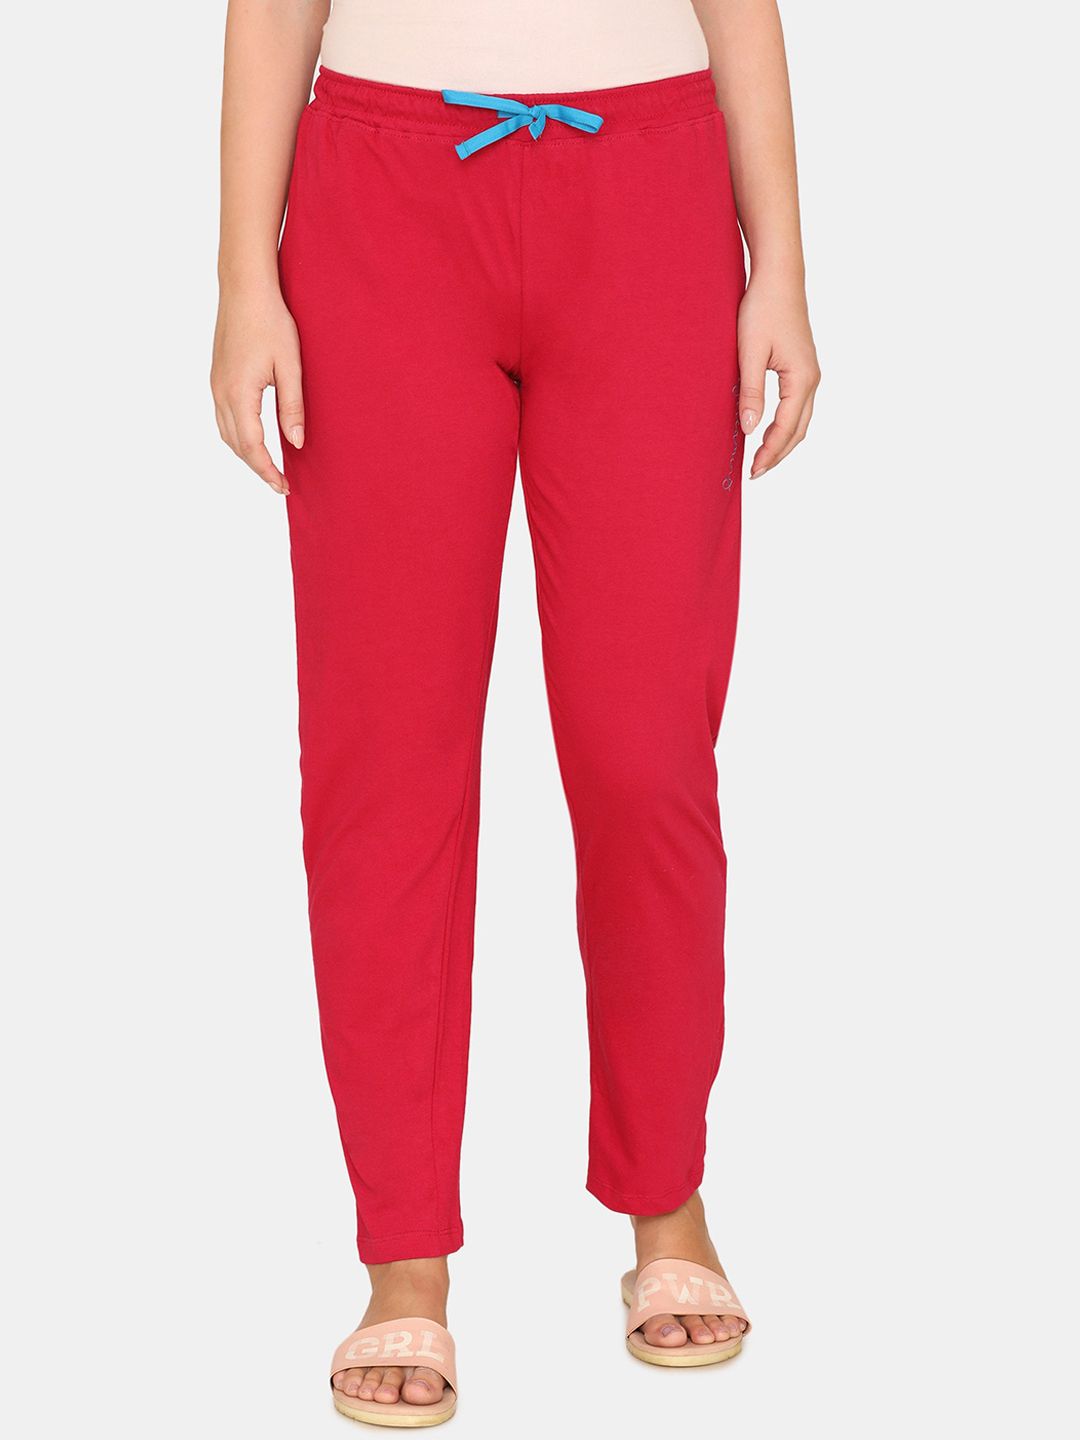 Zivame Womens Red My Besties Cotton Pyjama Price in India